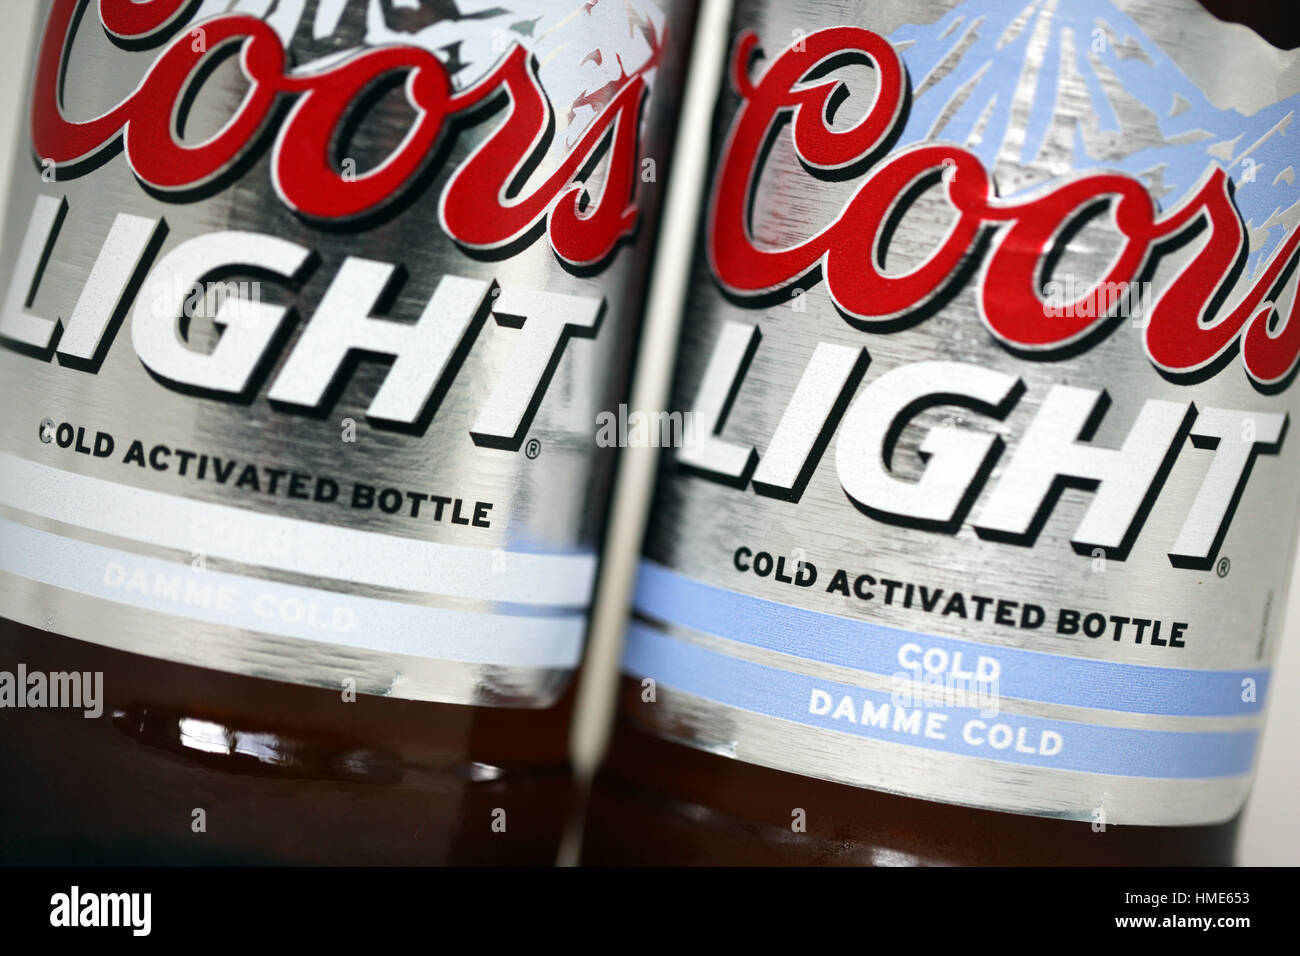 Coors Light frío activada botellas con una de las botellas se activan por ser inferiores a 39 grados Fahrenheit y la etiqueta cambia. Foto de stock